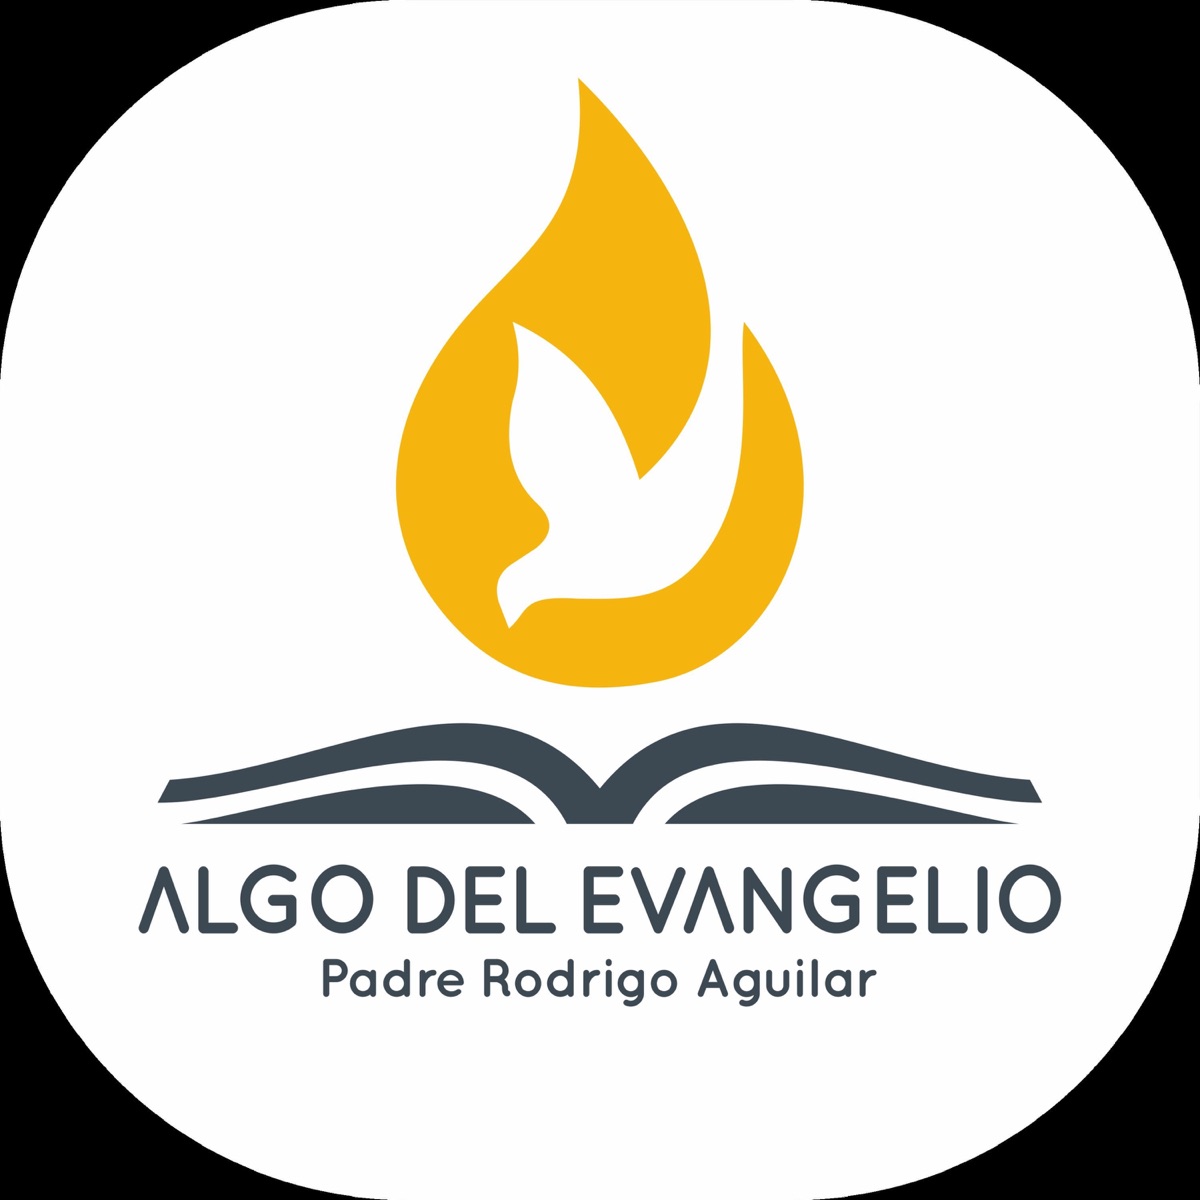 Algo del Evangelio - Padre Rodrigo Aguilar